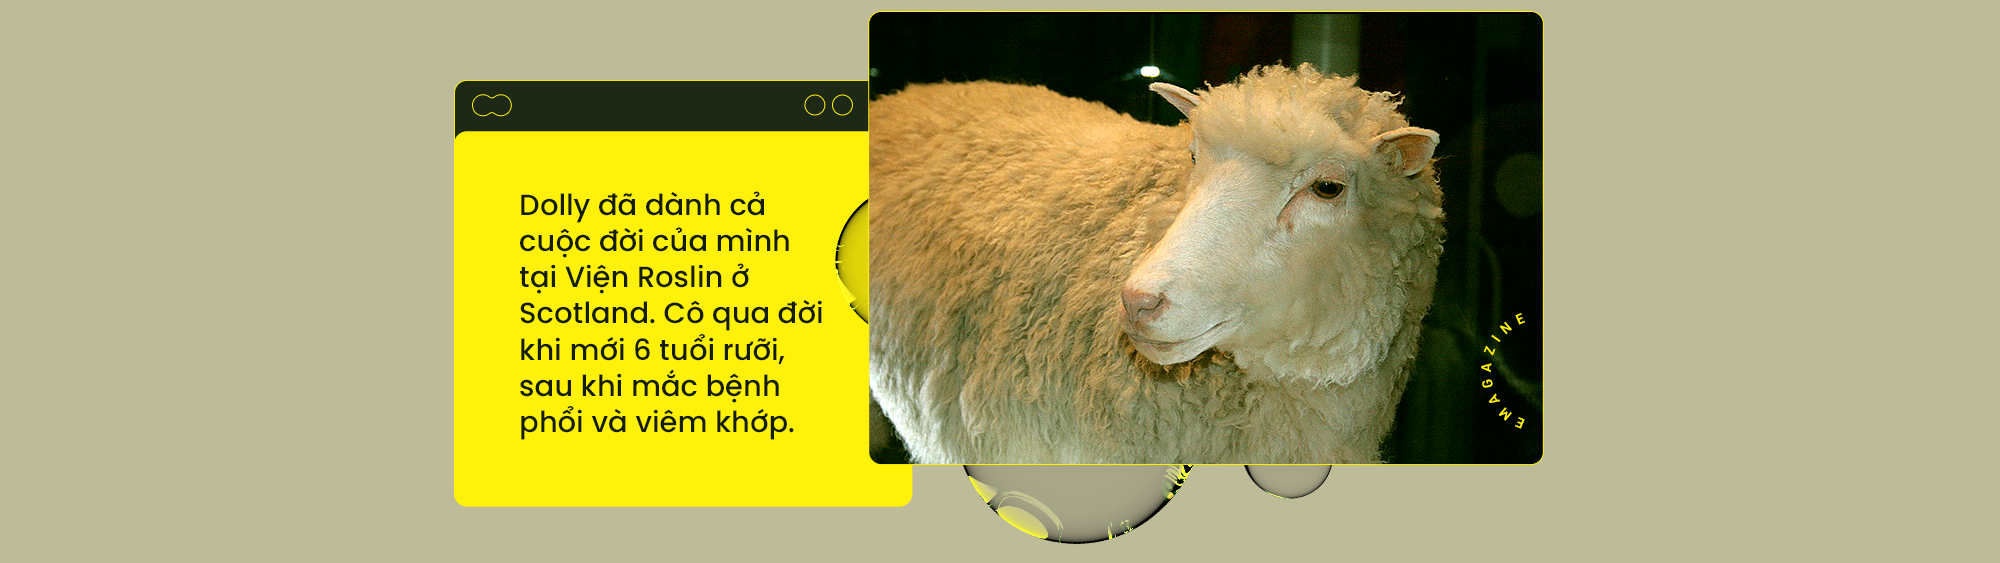 [Emag] Từ cừu Dolly đến voi ma mút: Nhân bản đã thay đổi thế giới của chúng ta như thế nào? - Ảnh 1.